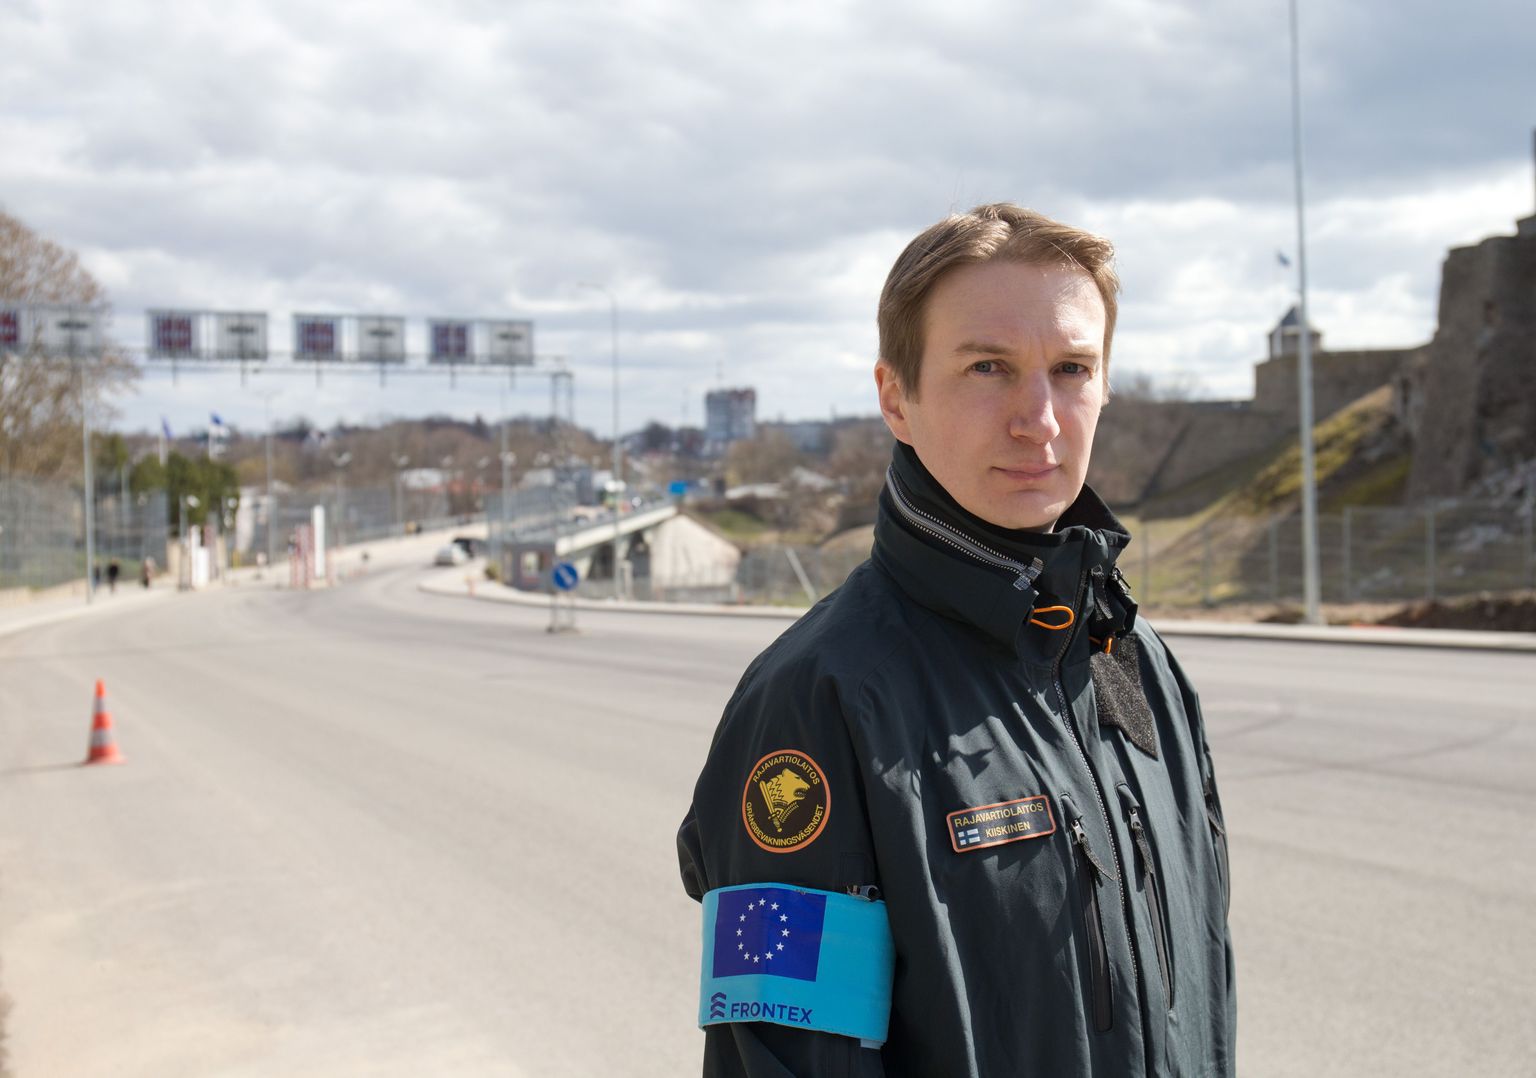 Euroopa Liidu piirivalveagentuuri FRONTEX kaudu Narva piiripunkti lähetatud Soome piirivalvur Tuomas Kiiskinen. Taamal, teisel pool silda on juba Venemaa.